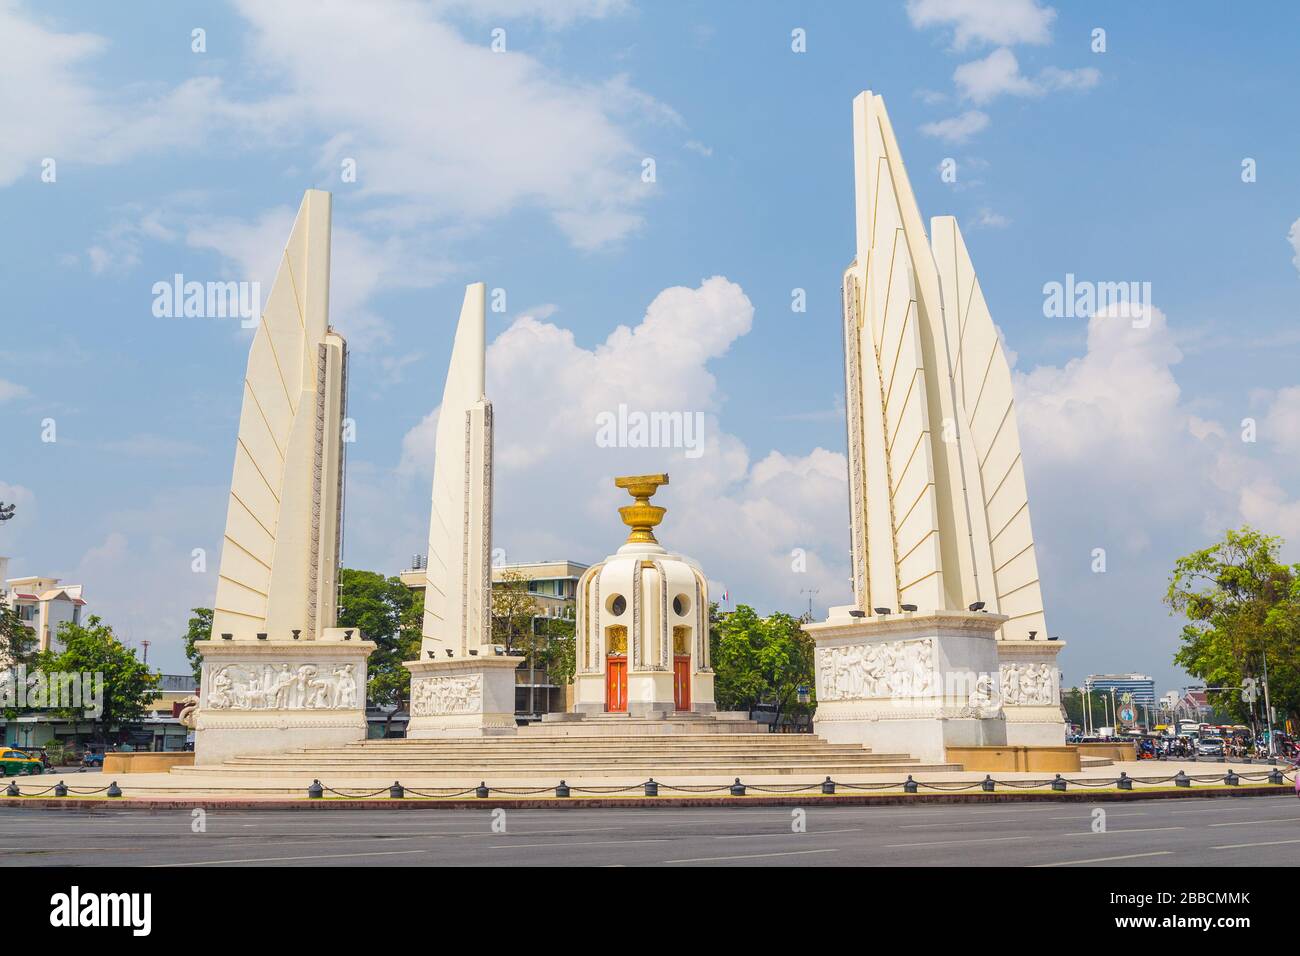 BANGKOK, THAILANDIA - 17TH MARZO 2017: Monumento alla democrazia nel centro di Bangkok. Il monumento è stato costruito per onorare la costituzione tailandese. Foto Stock